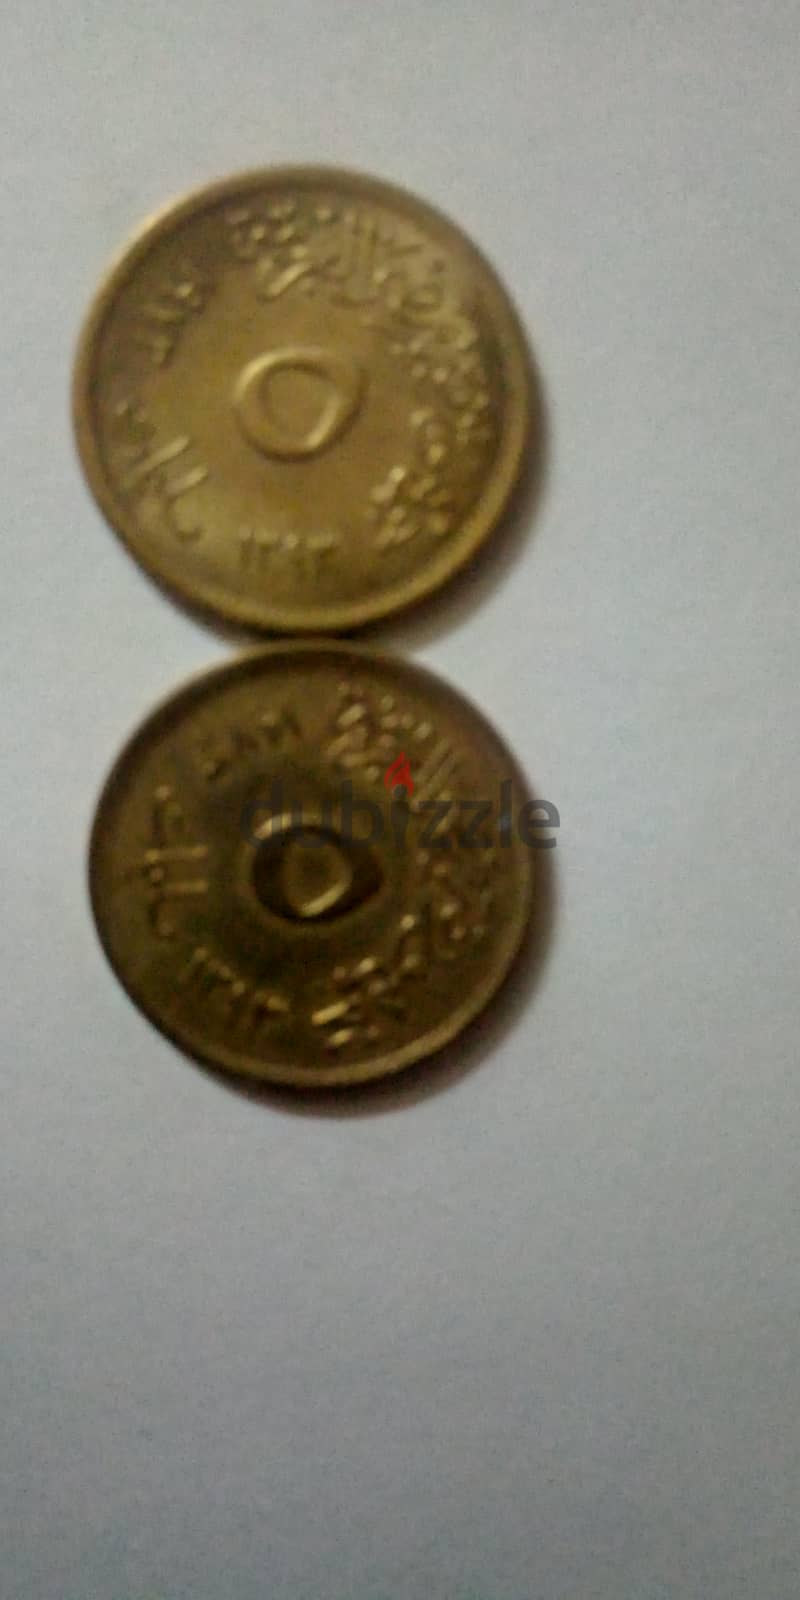 مجموعة نادرة من 10عملات معدنية نحاسية من فئة 5 مليمات مصرية اصدار 1973 4